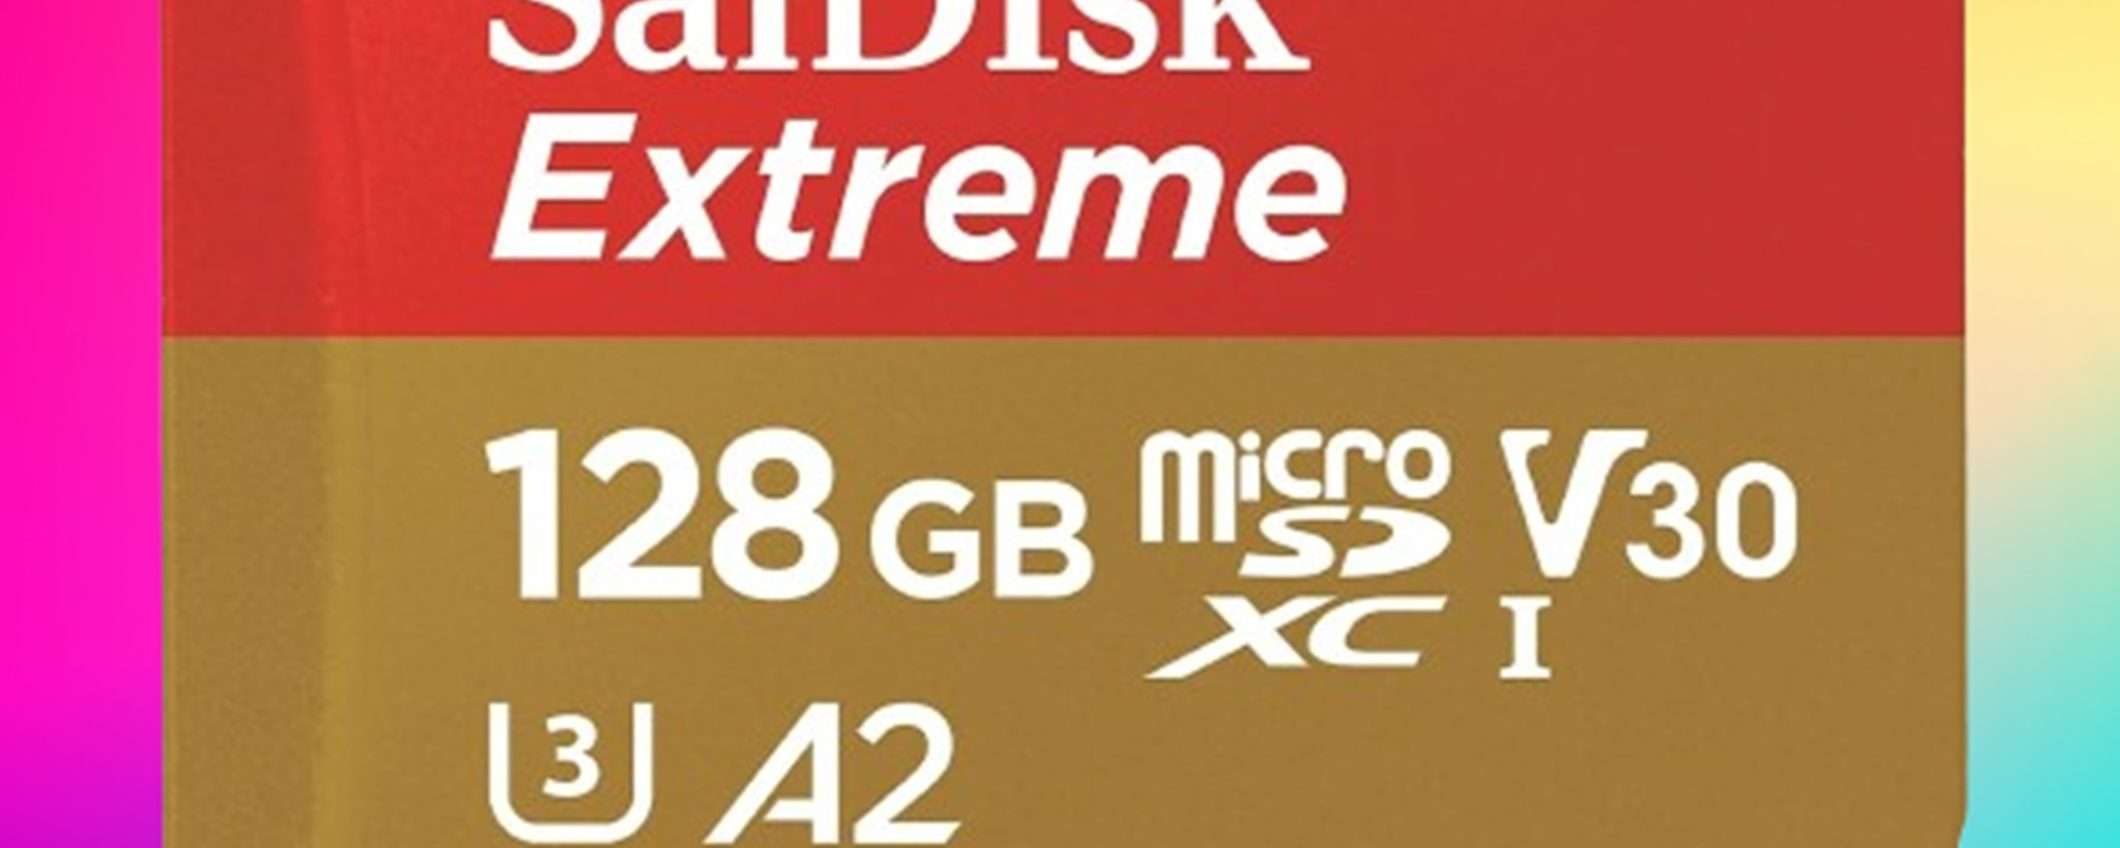 MicroSDXC SanDisk Extreme da 128GB a soli 22€: lo sconto del 52% è ASSURDO!